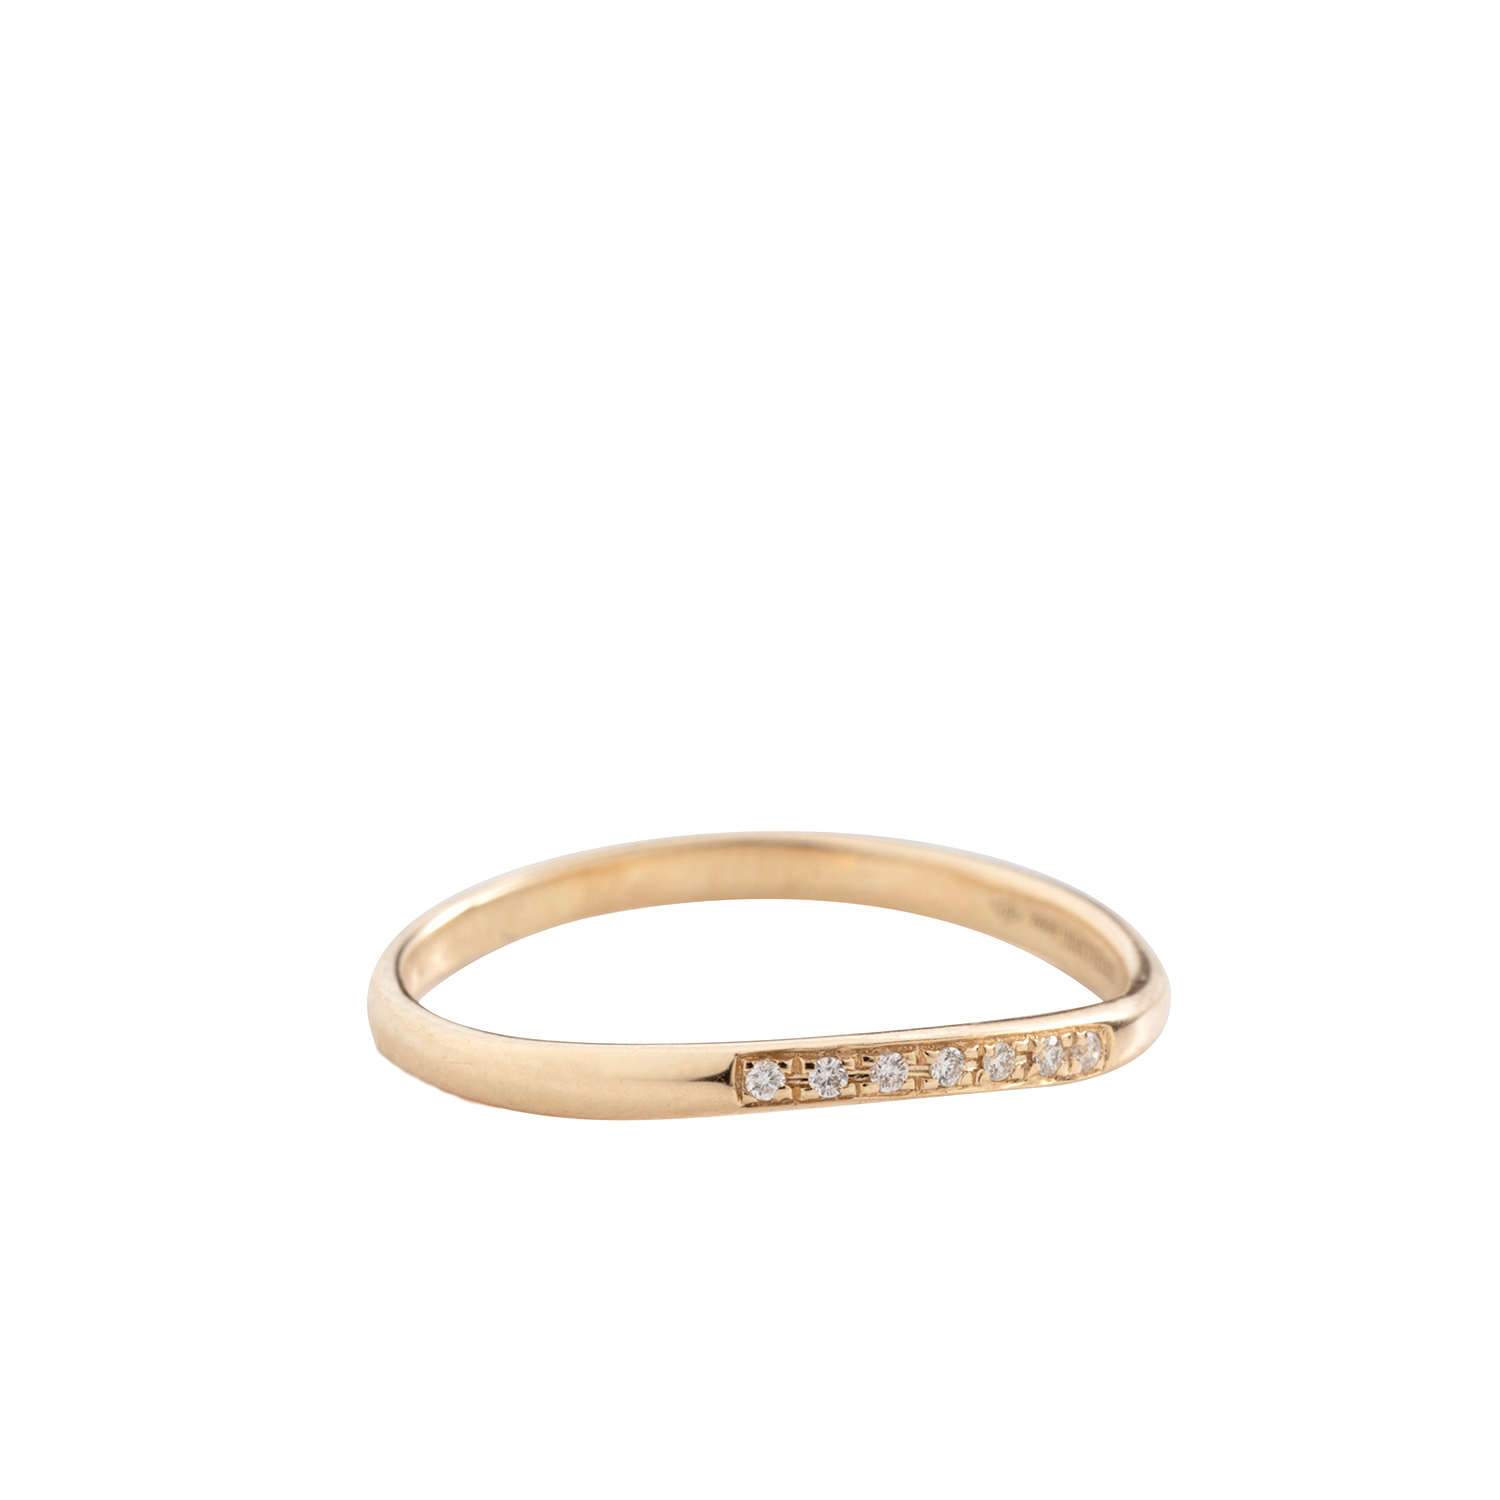 10K gold veretta ring white diamond - IOSSELLIANI microcosmo